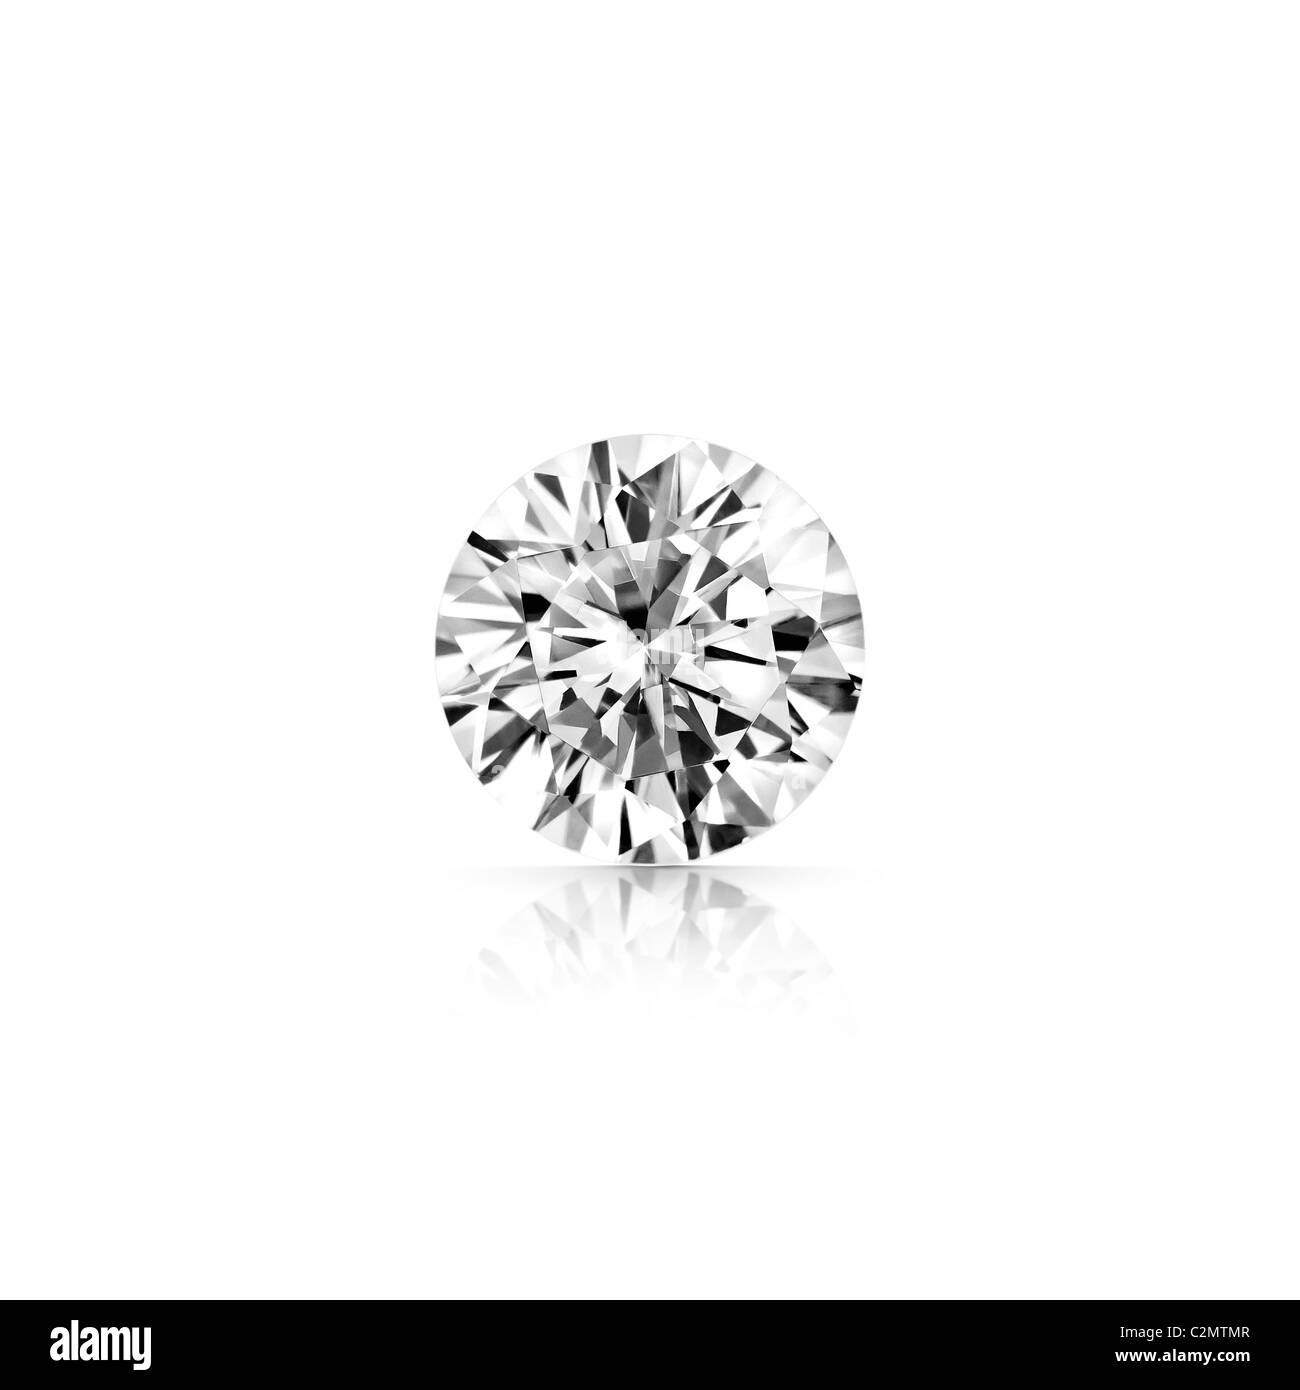 Diamant taille brillant gris isolé sur fond blanc avec réflexion partielle et clipping path Banque D'Images